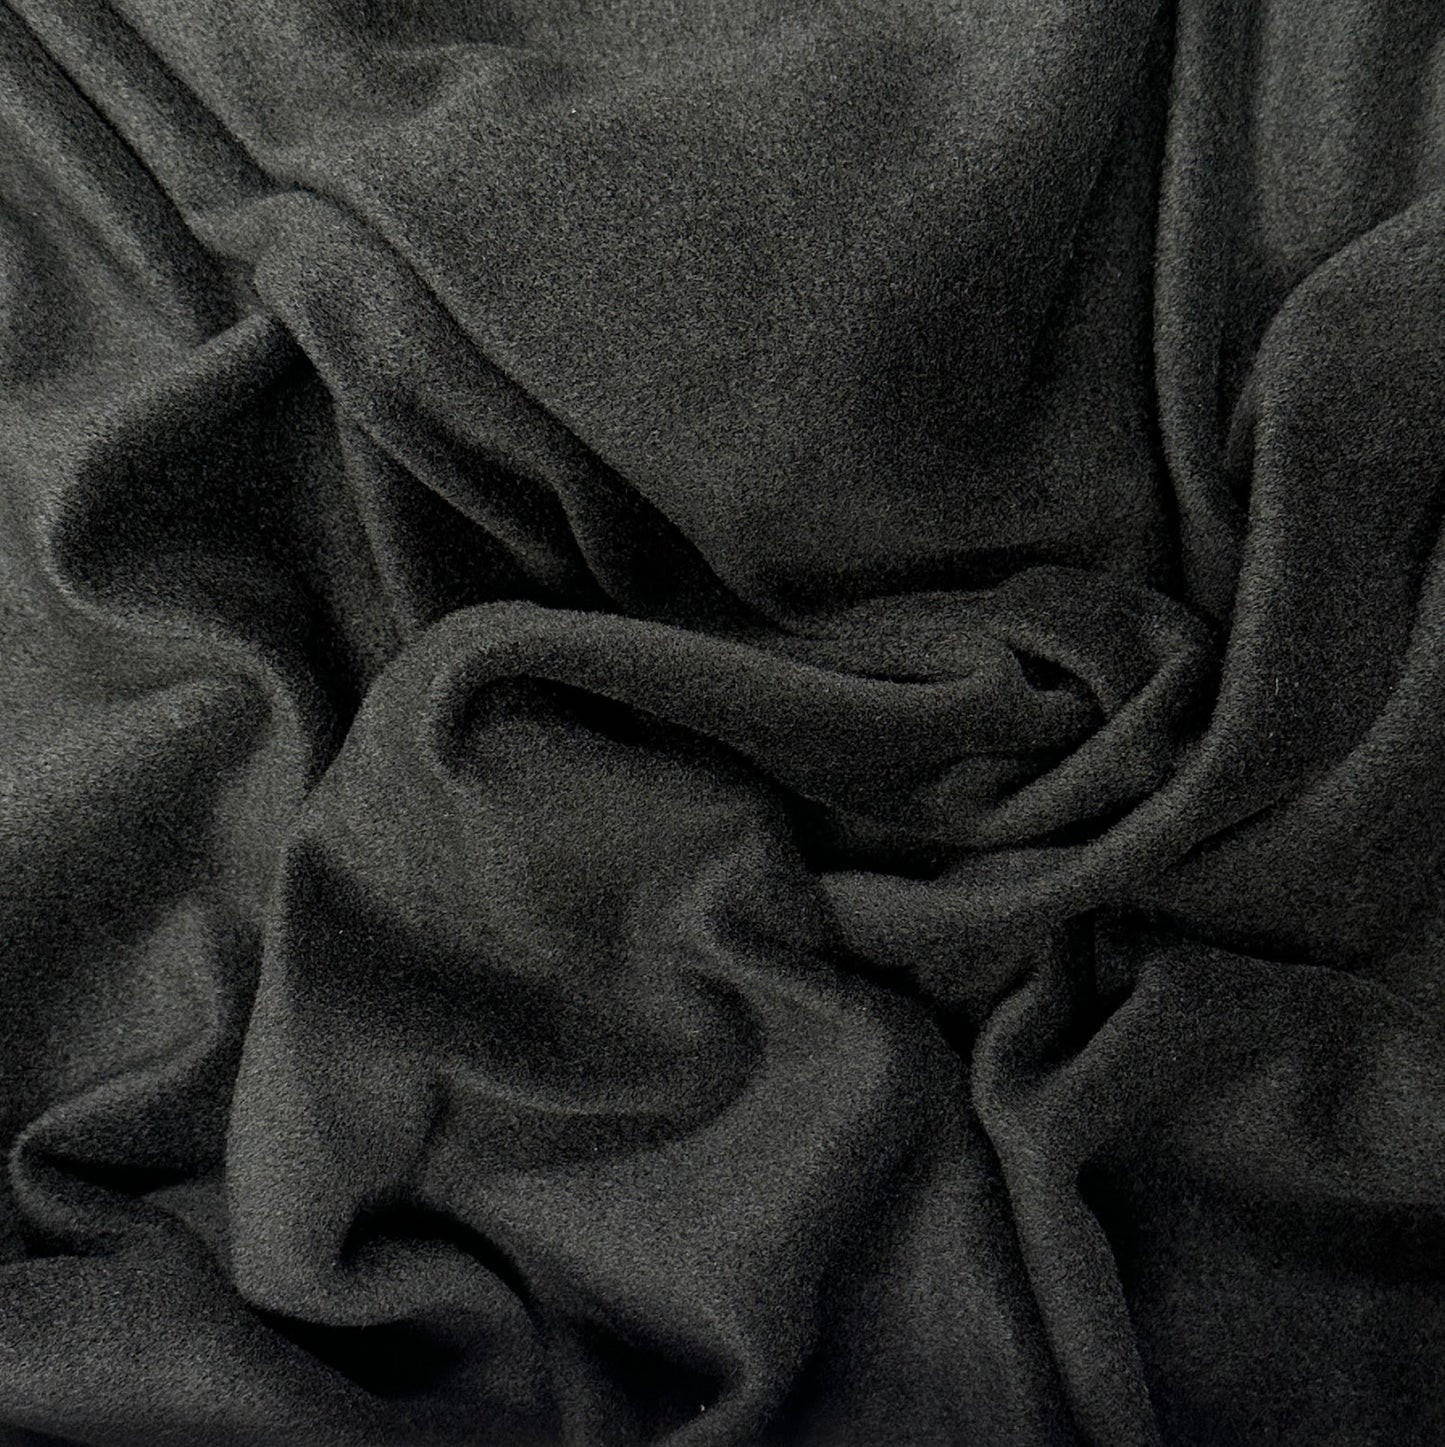 Heavy Polyester Velvet - Black - Deadstock Fabric